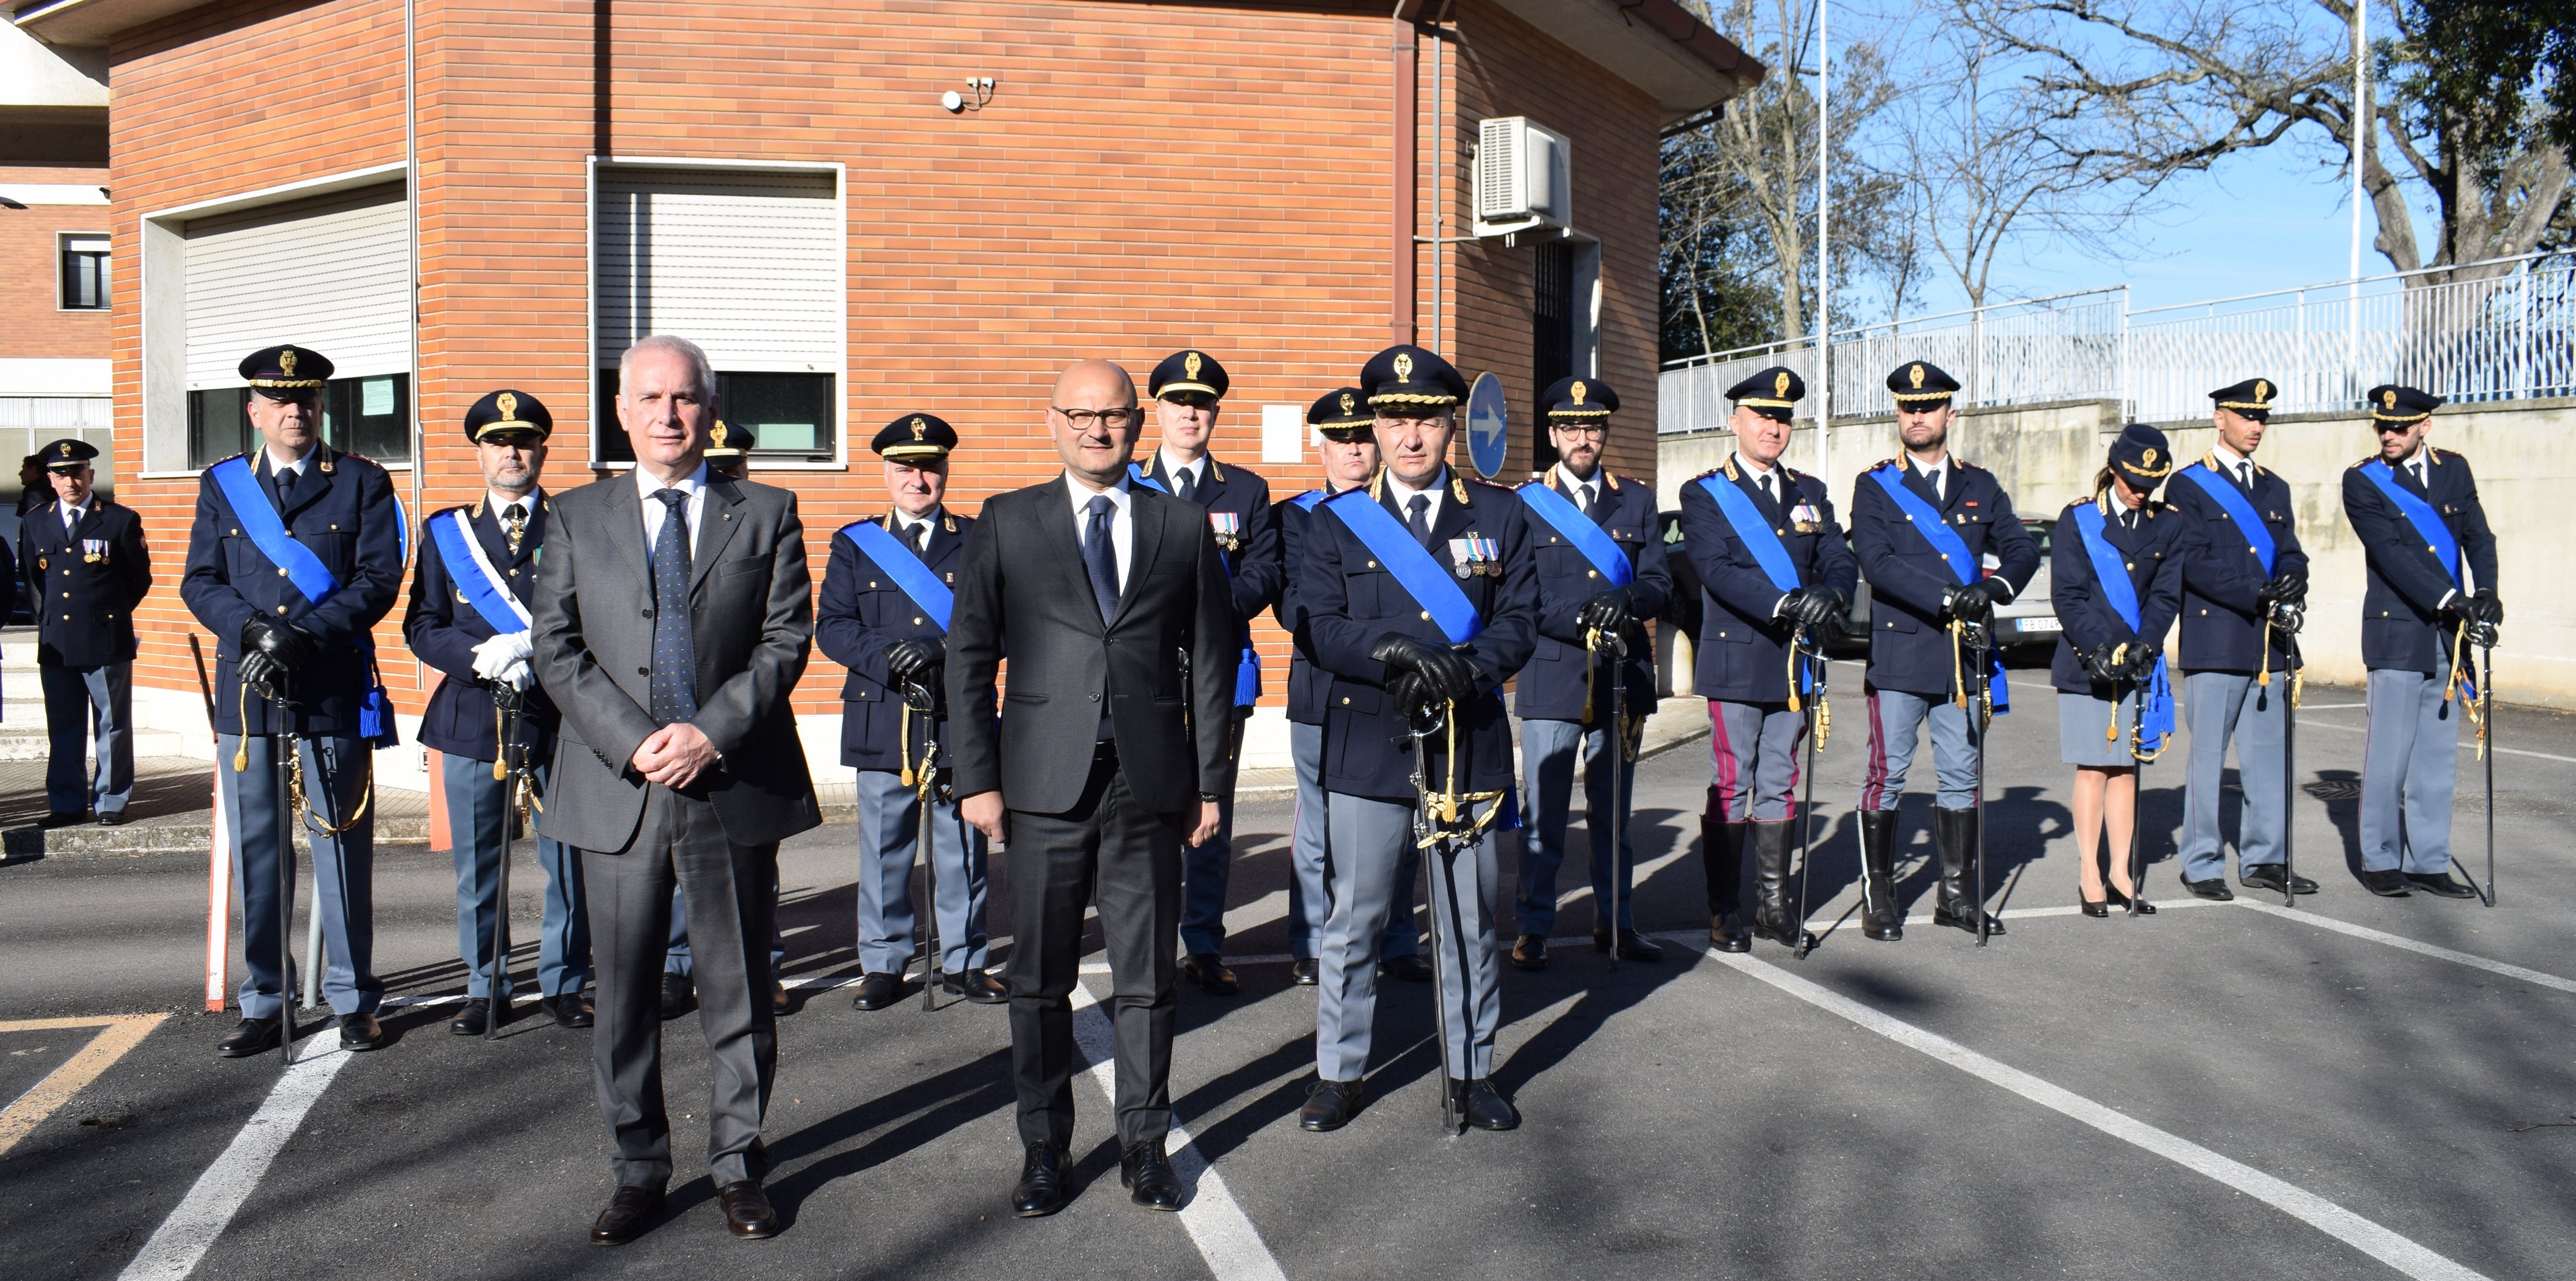 Macerata, le celebrazioni per il 170° anniversario della fondazione della Polizia di Stato